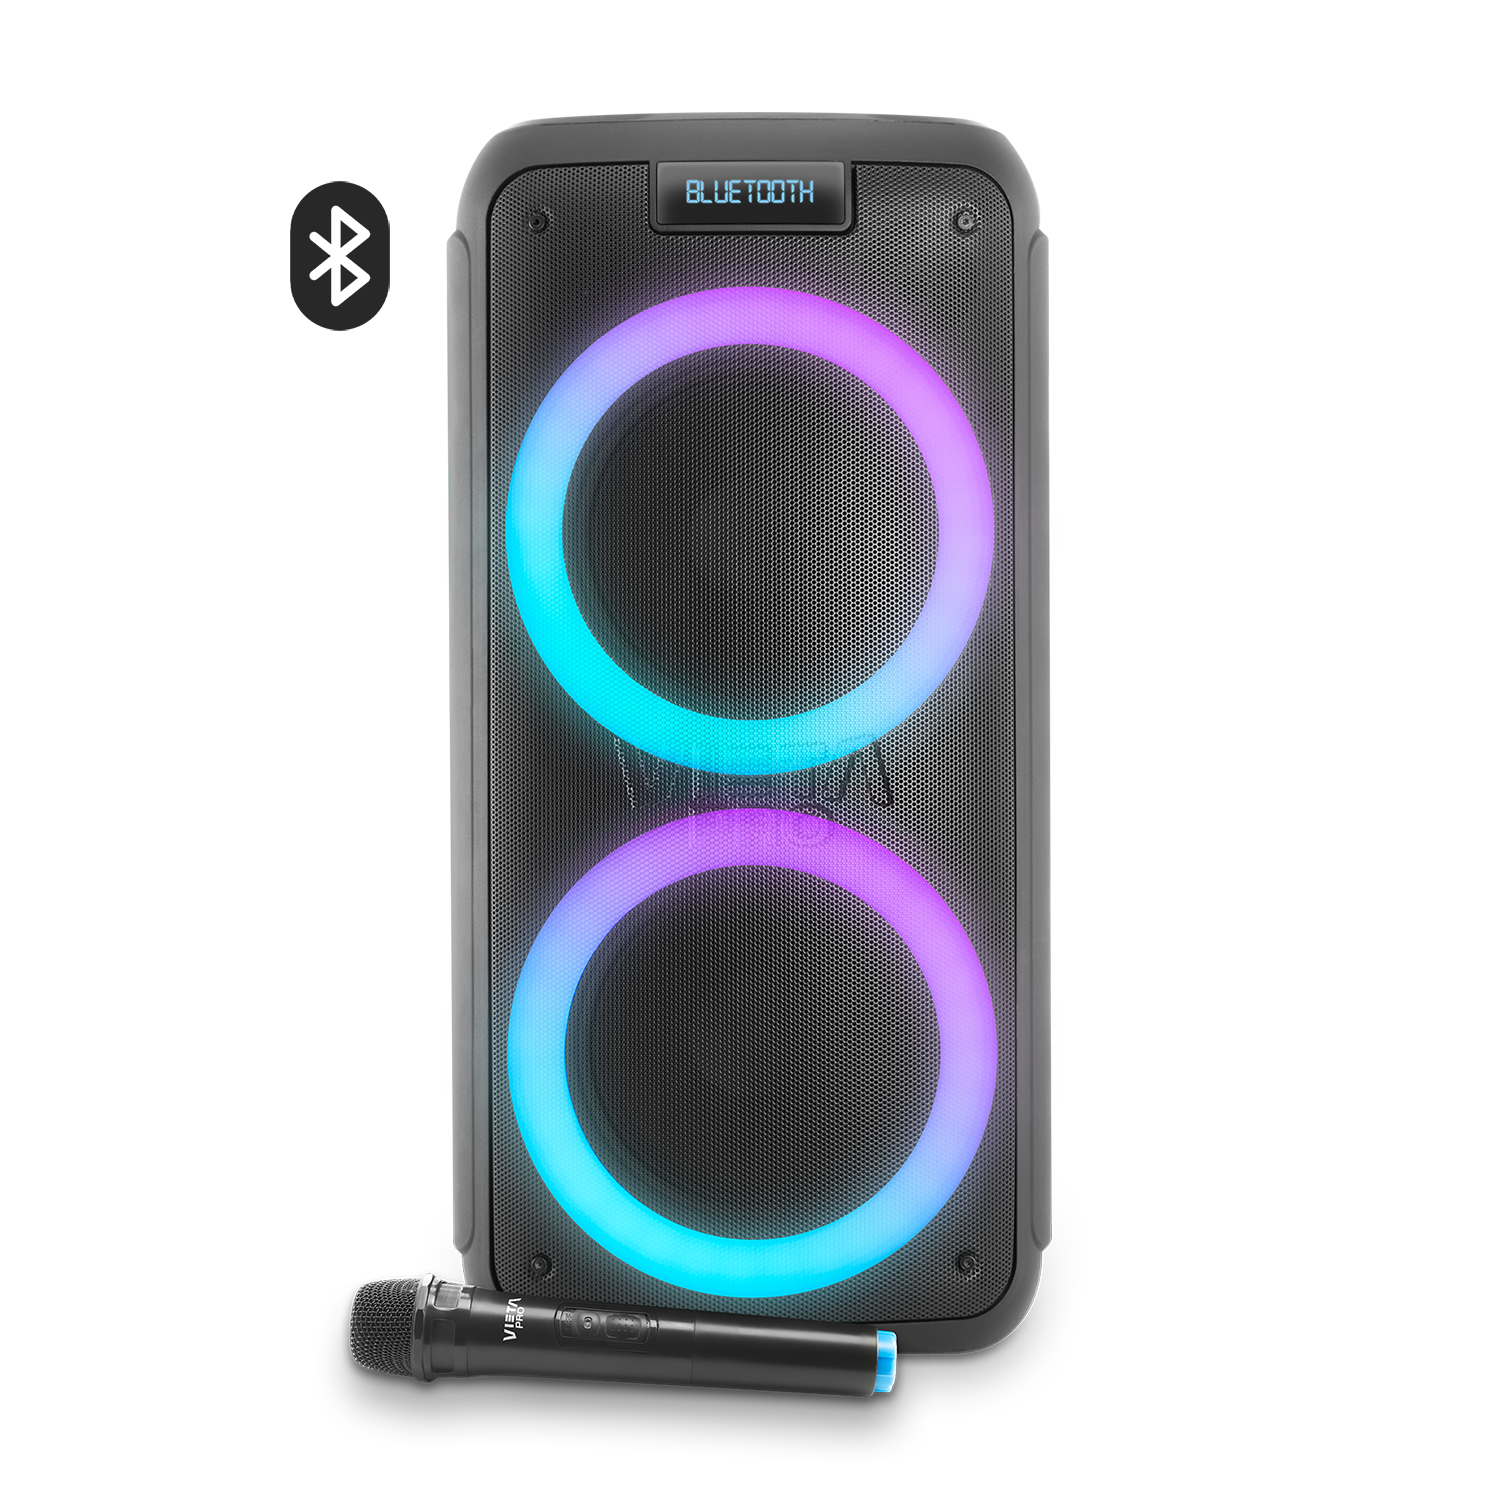 Altavoz Goody 2 de Vieta Pro, con Bluetooth 5.0, True Wireless, Micrófono,  Radio FM, 12 horas de batería, Resistencia al agua IPX7, entrada auxiliar y  botón directo al asistente virtual, color rosa. 